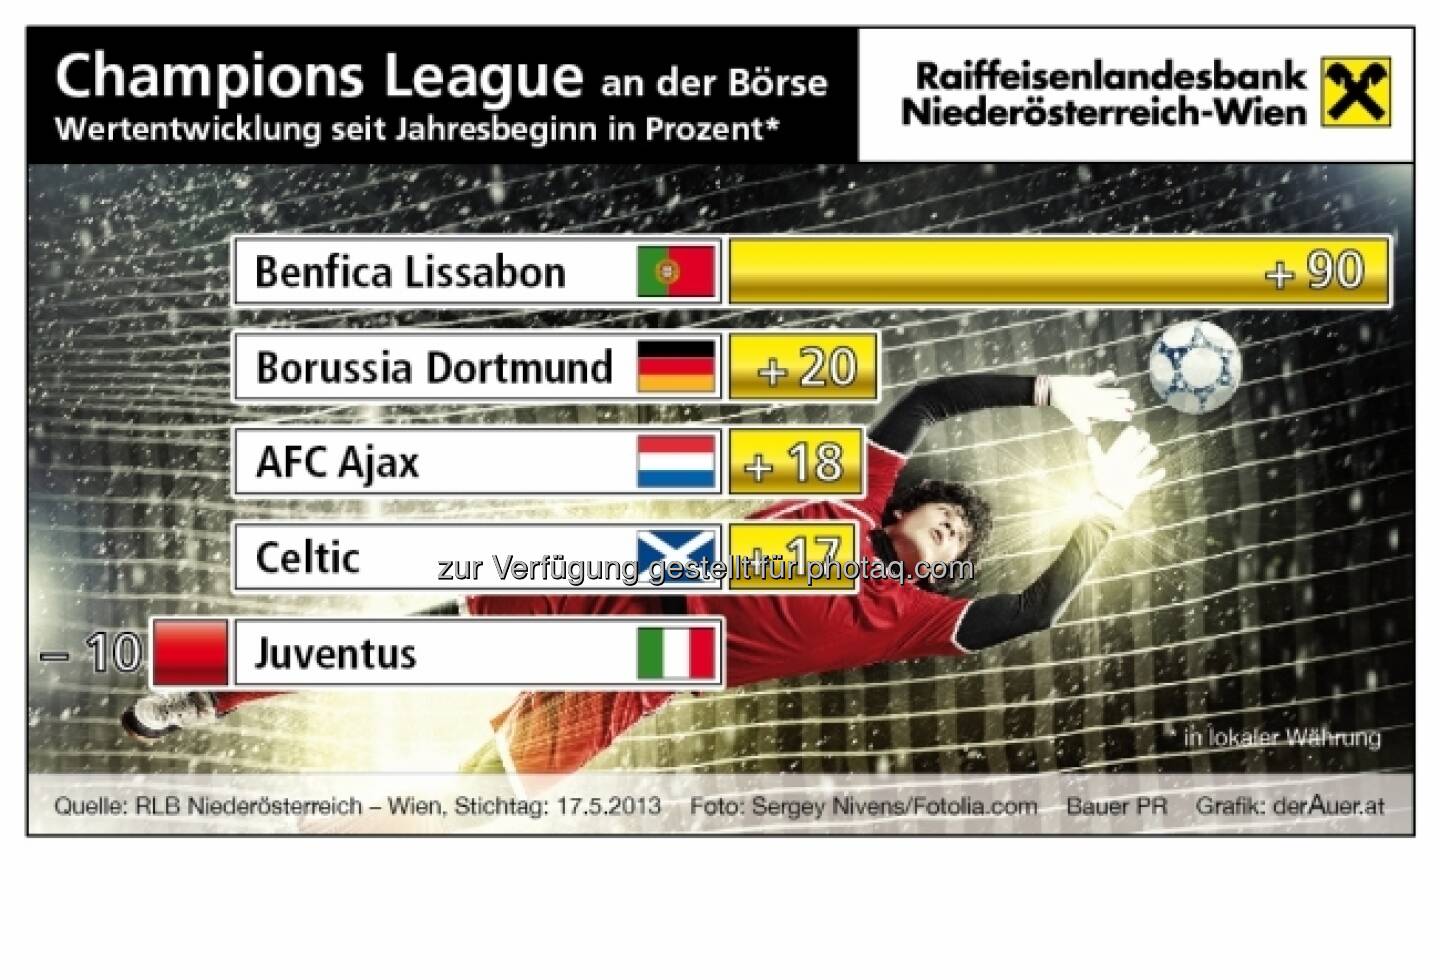 Champions League an der Börse: Benfica Lissabon, Borussia Dortmund, AFC Ajax, Celtic, Juventus - Performance ytd (c) derAuer Grafik Buch Web